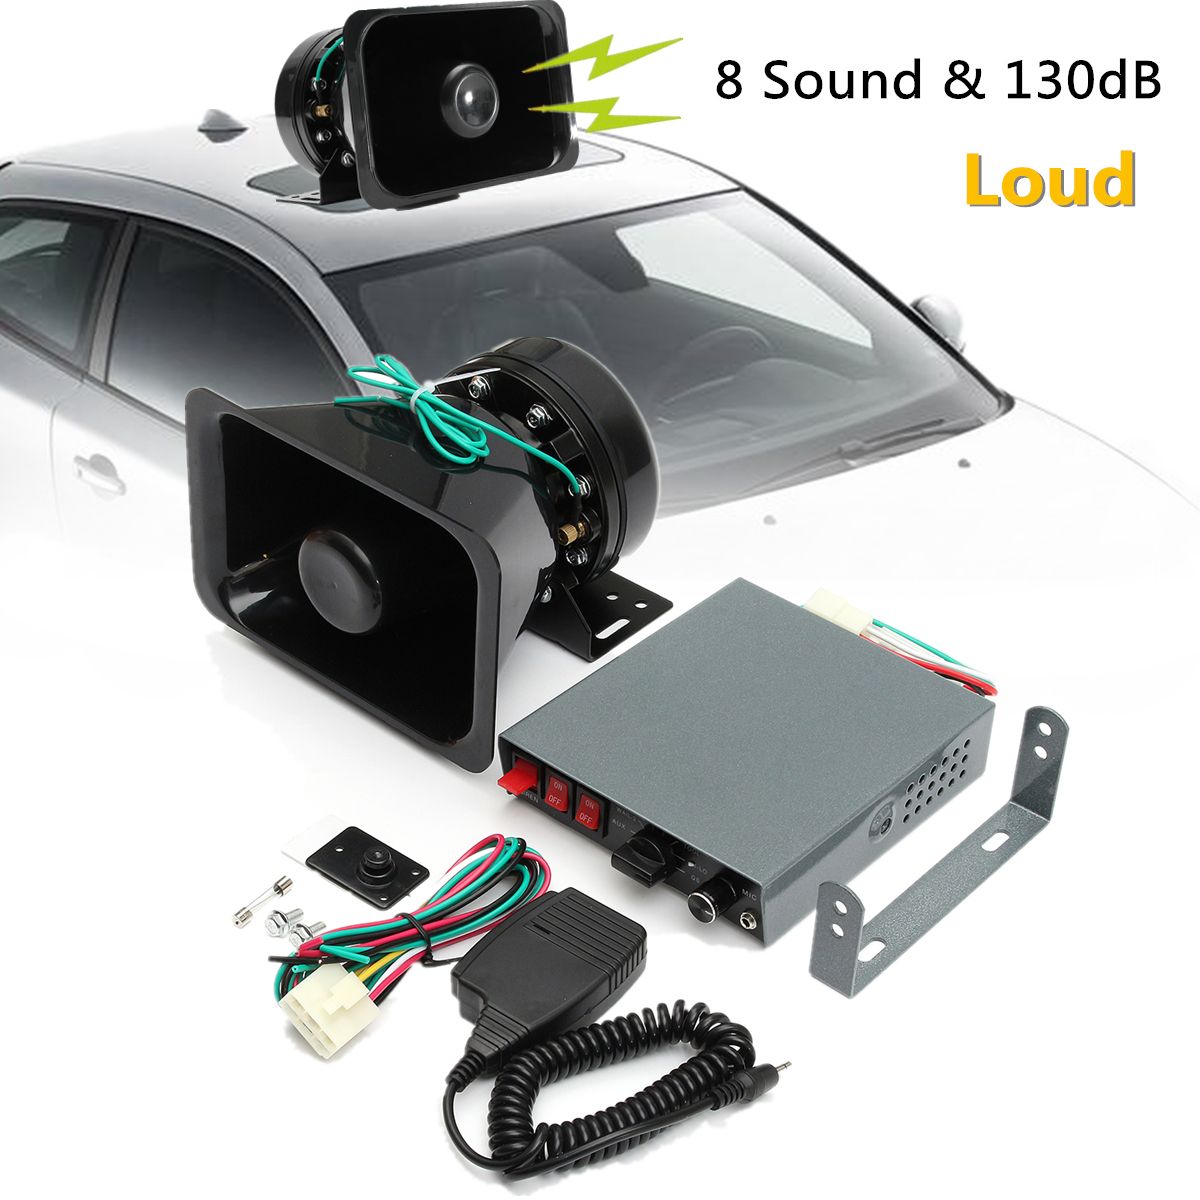 12V-8-Sound-Car-Truck-Warning-Alarm-Loud-Speaker-Siren-Horn-MIC-System-Megaphone-1365629